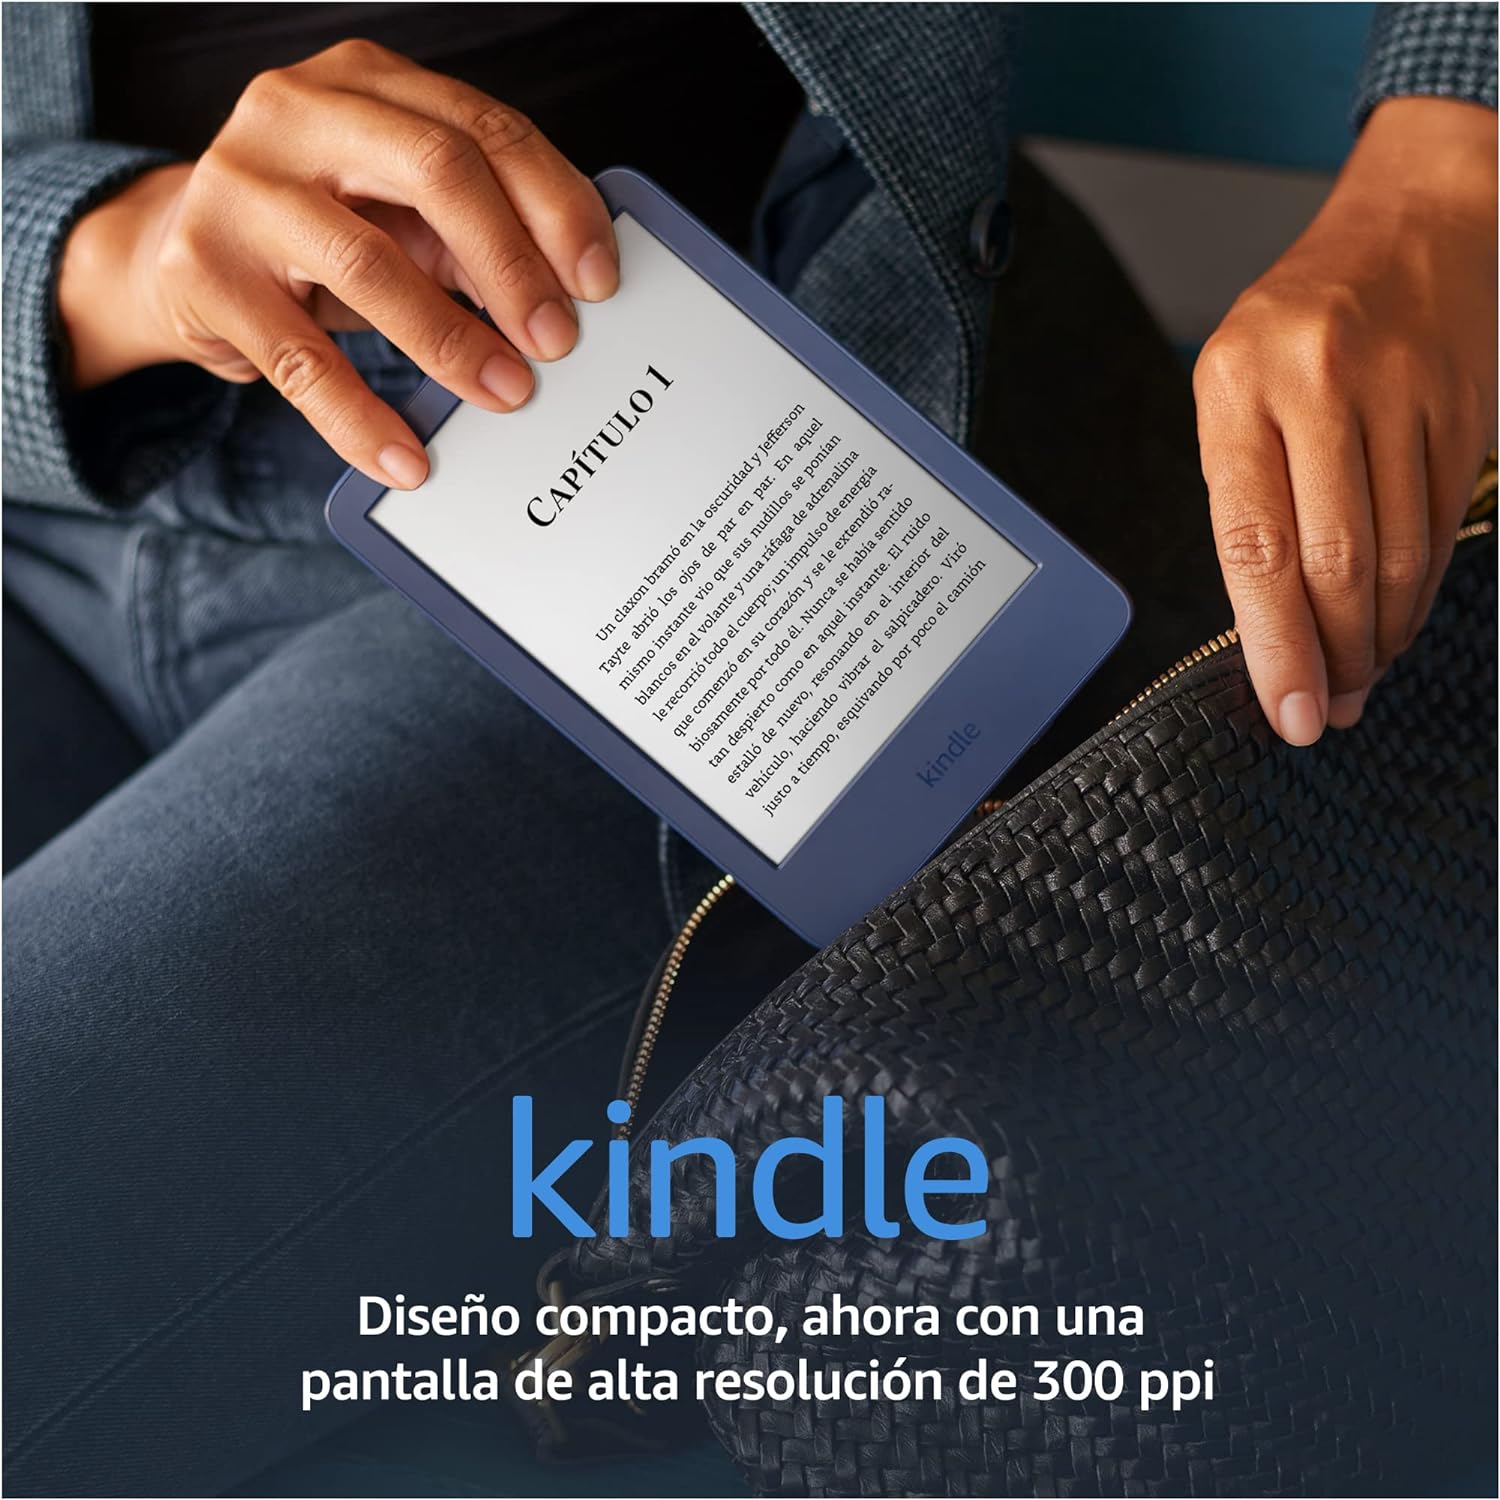 Amazon Kindle – Nuestro Kindle más ligero y compacto, ahora con una mayor duración de la batería, luz frontal ajustable y 16 GB de almacenamiento – Negro